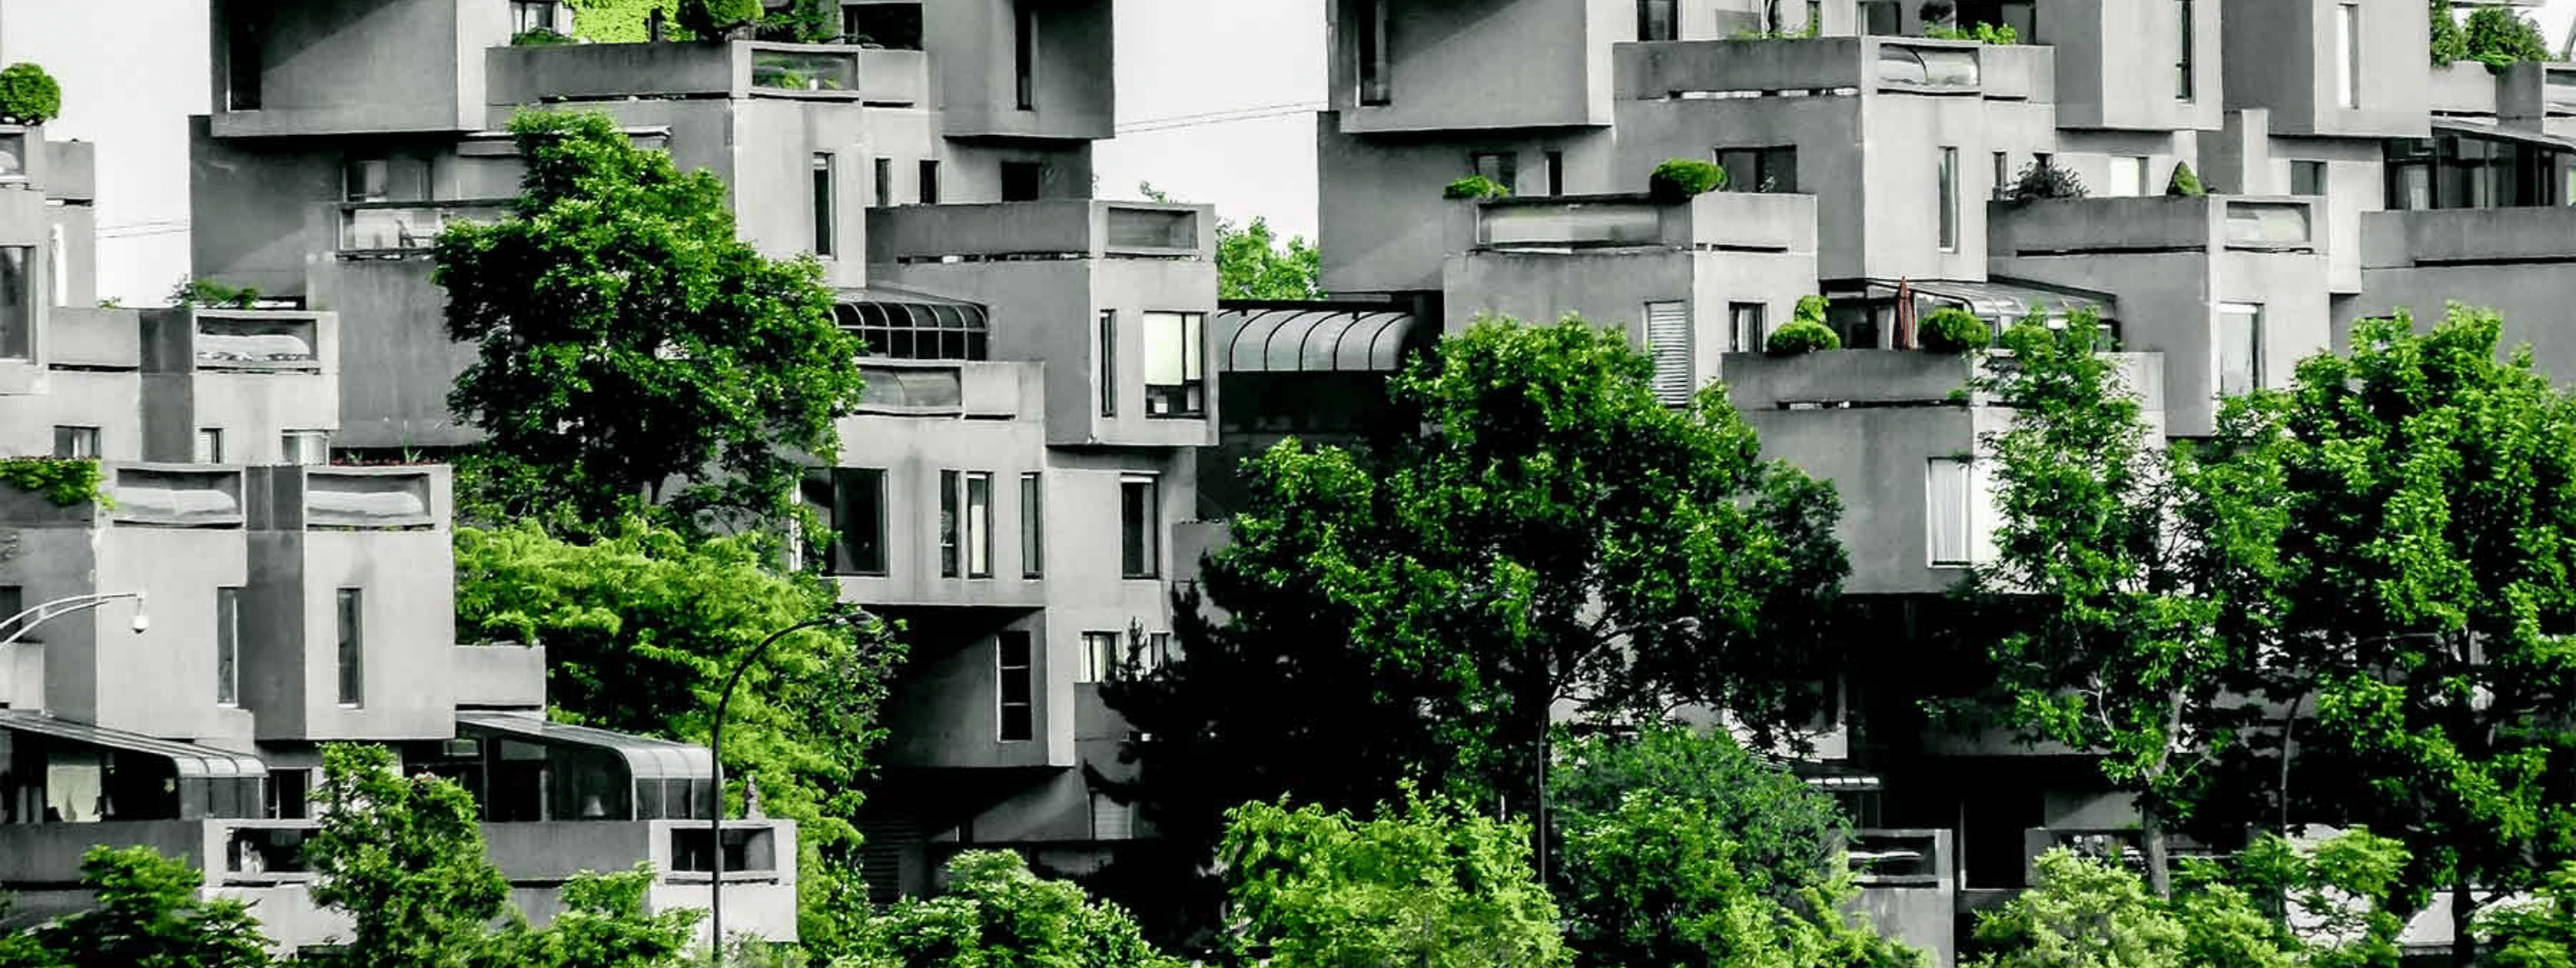 Concrete Building